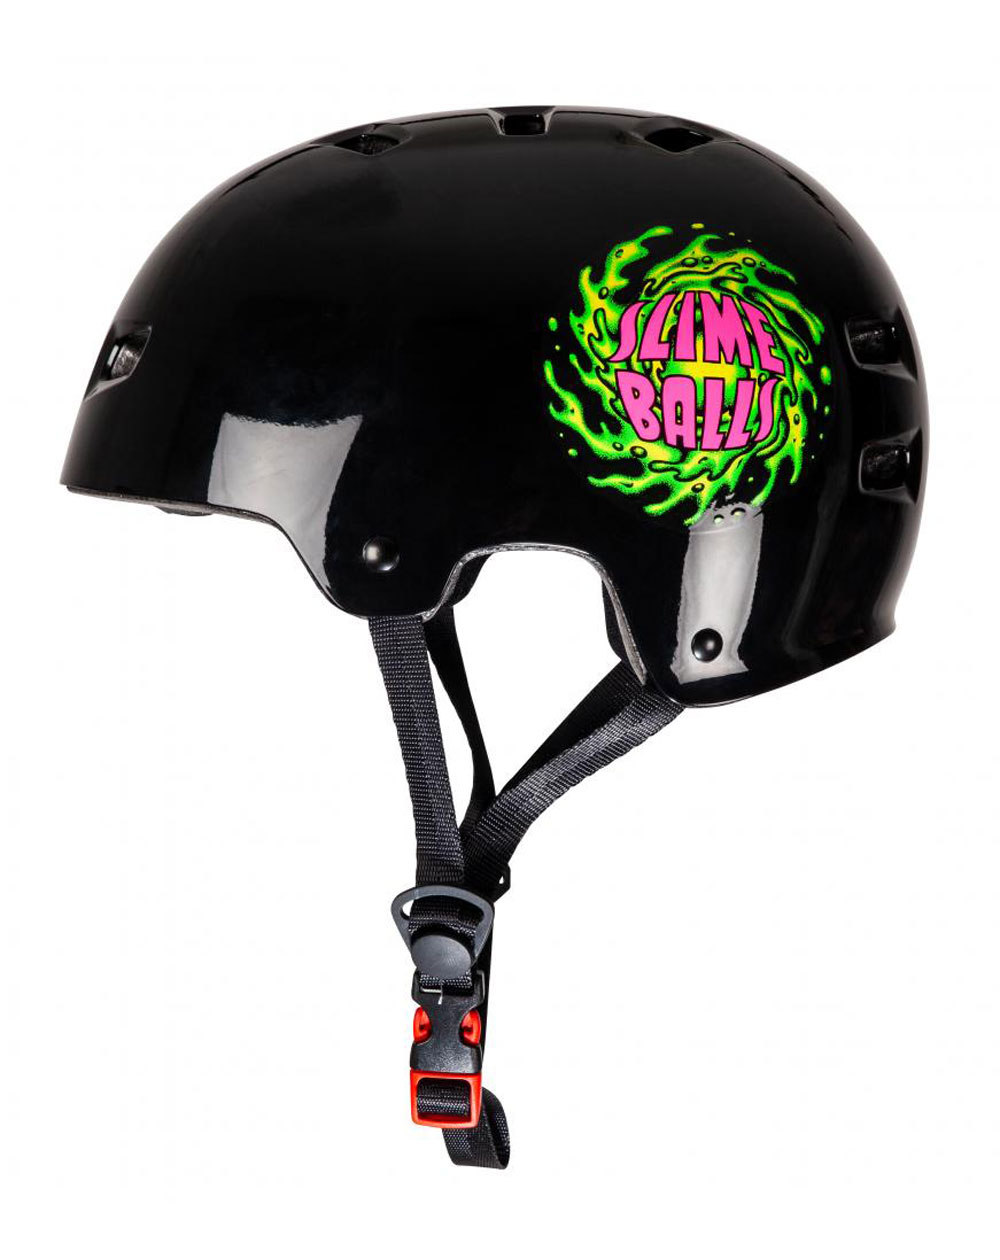 Bullet Safety Gear Capacete Skate Bullet x Slime Balls Slime Logo Black